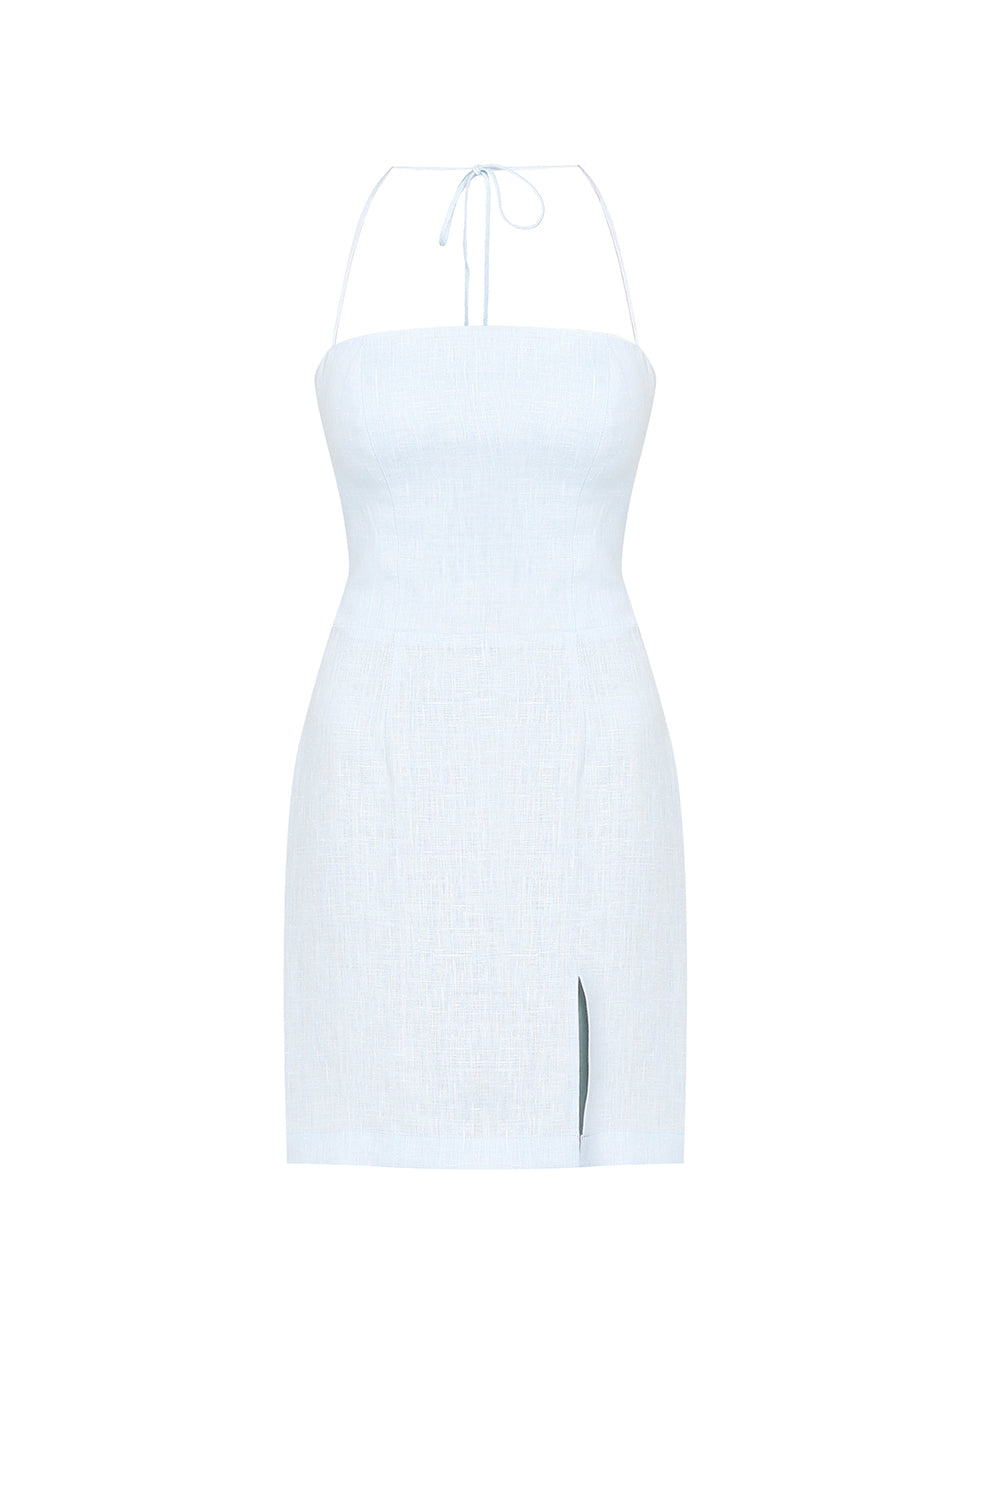 Nori Sky Blue Mini Linen Dress